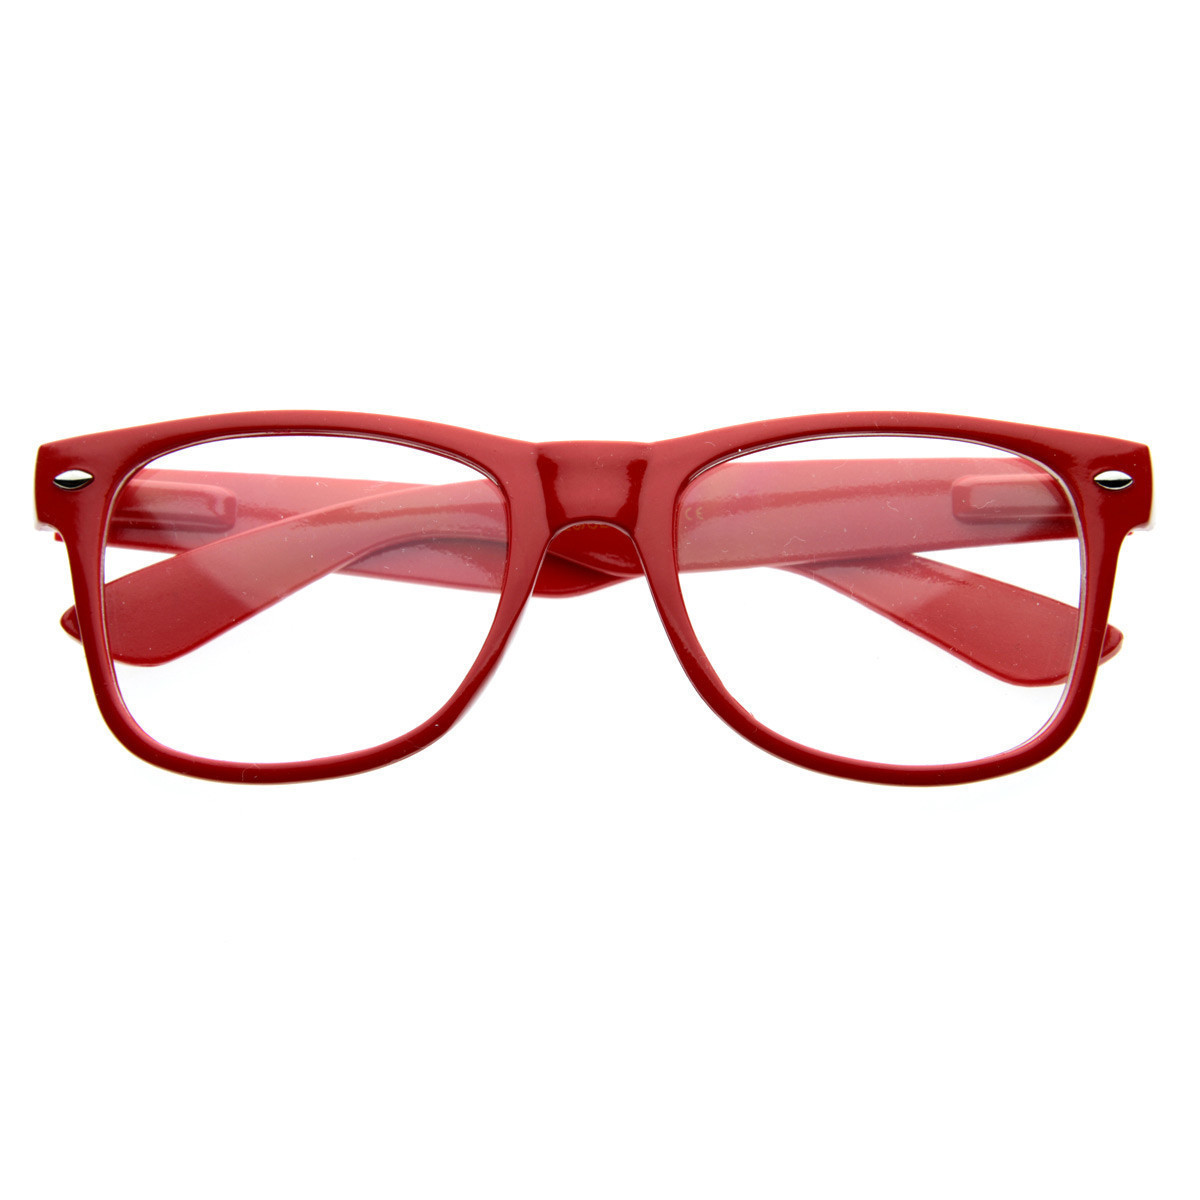 Vintage Inspired Eyewear Original Geek Nerd Clear Lens Horned Rim Glasses - 2874 - Tortoise